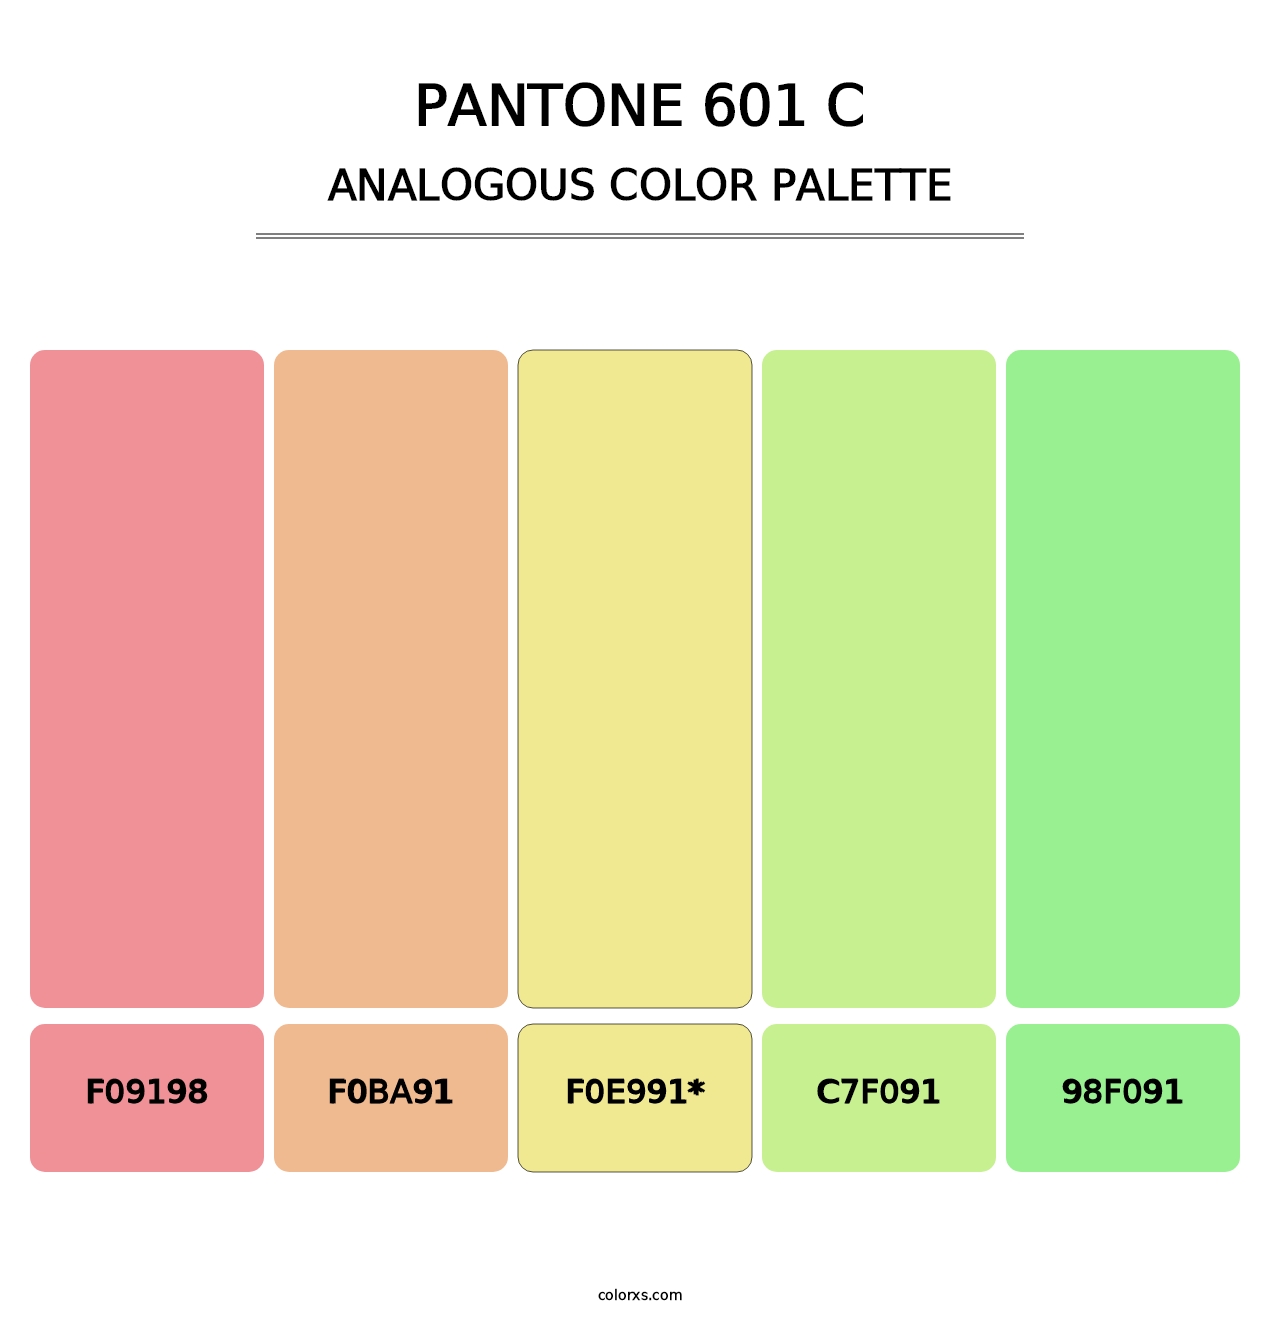 PANTONE 601 C - Analogous Color Palette